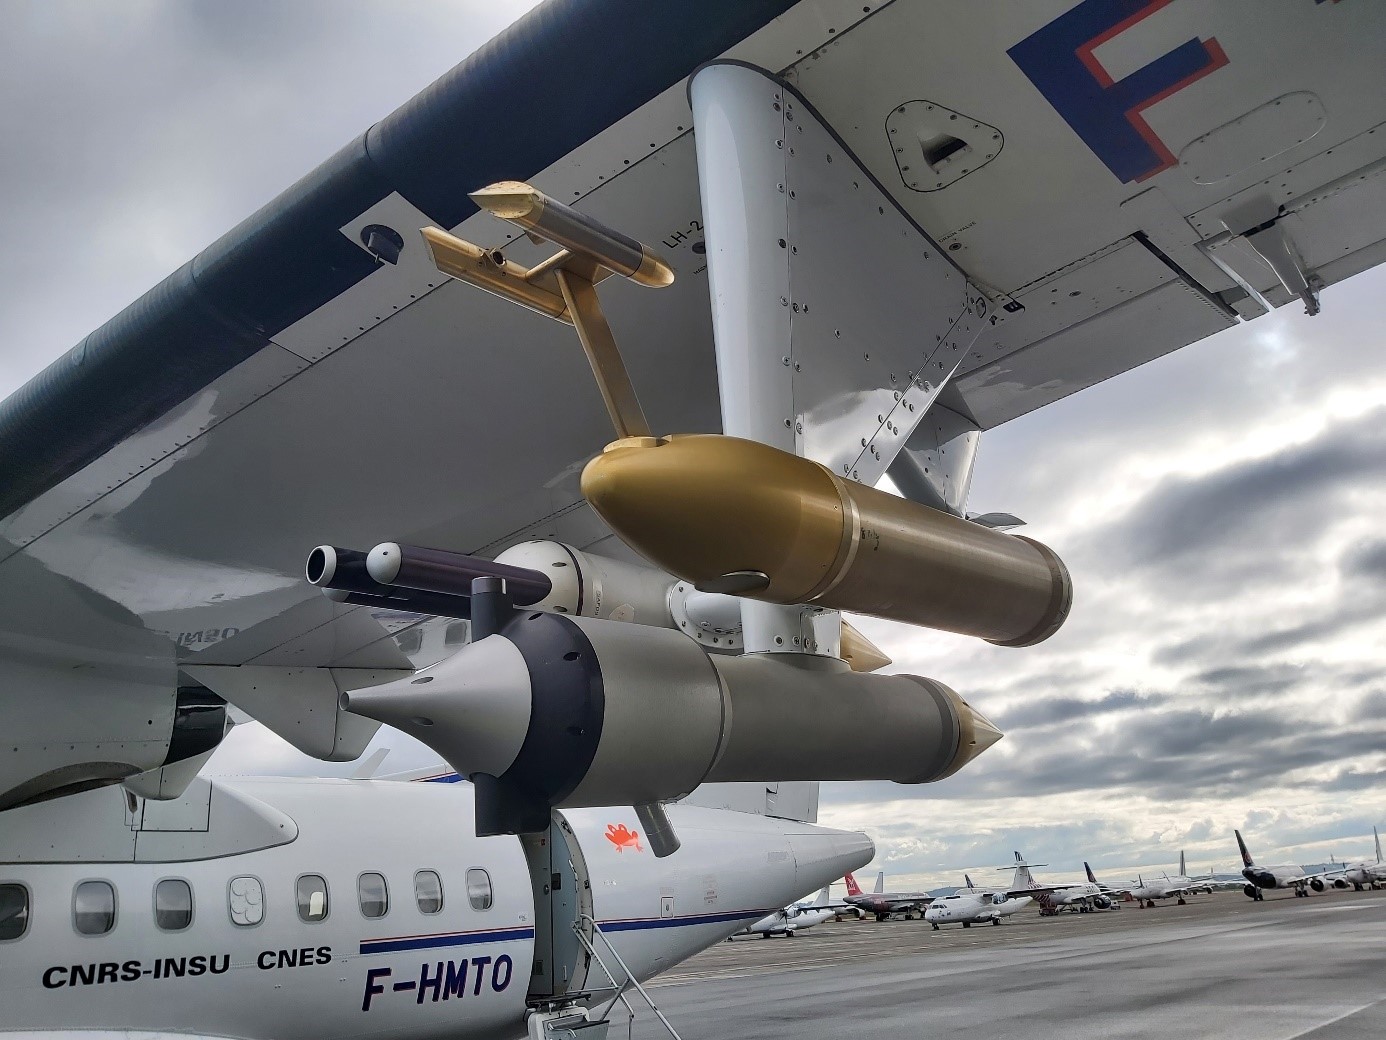 L'instrument NP-IP (Néphélomètre polaire aéroporté de seconde génération) installé en position basse sous l’aile gauche de l’ATR-42 permet de mesurer in situ les propriétés optiques des nuages.